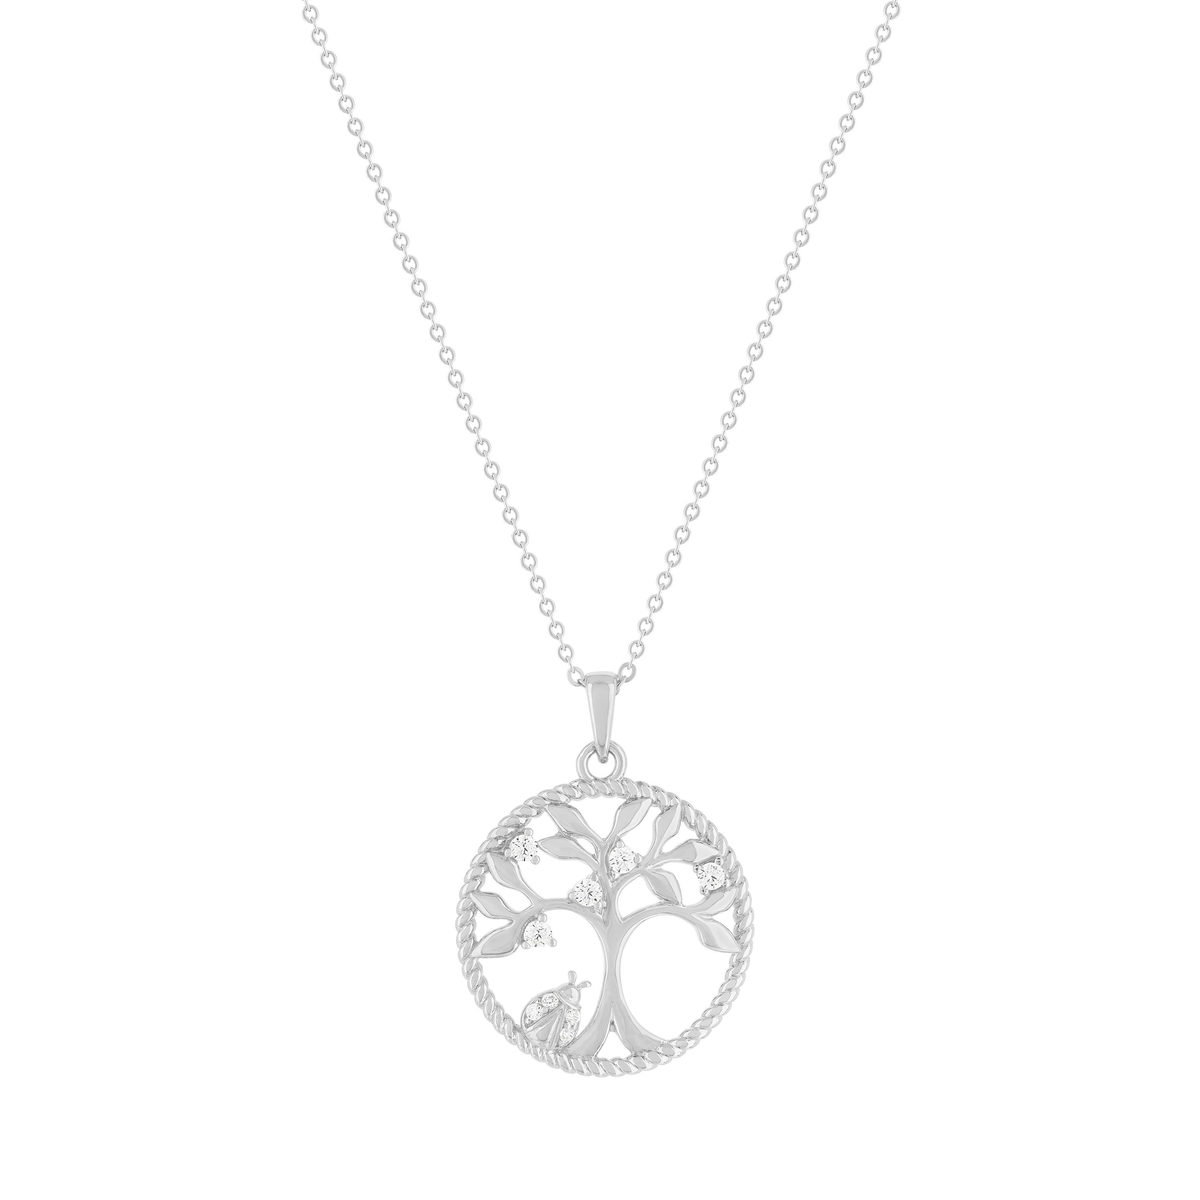 Collier argent 925 et zirconias motif arbre de vie 45cm